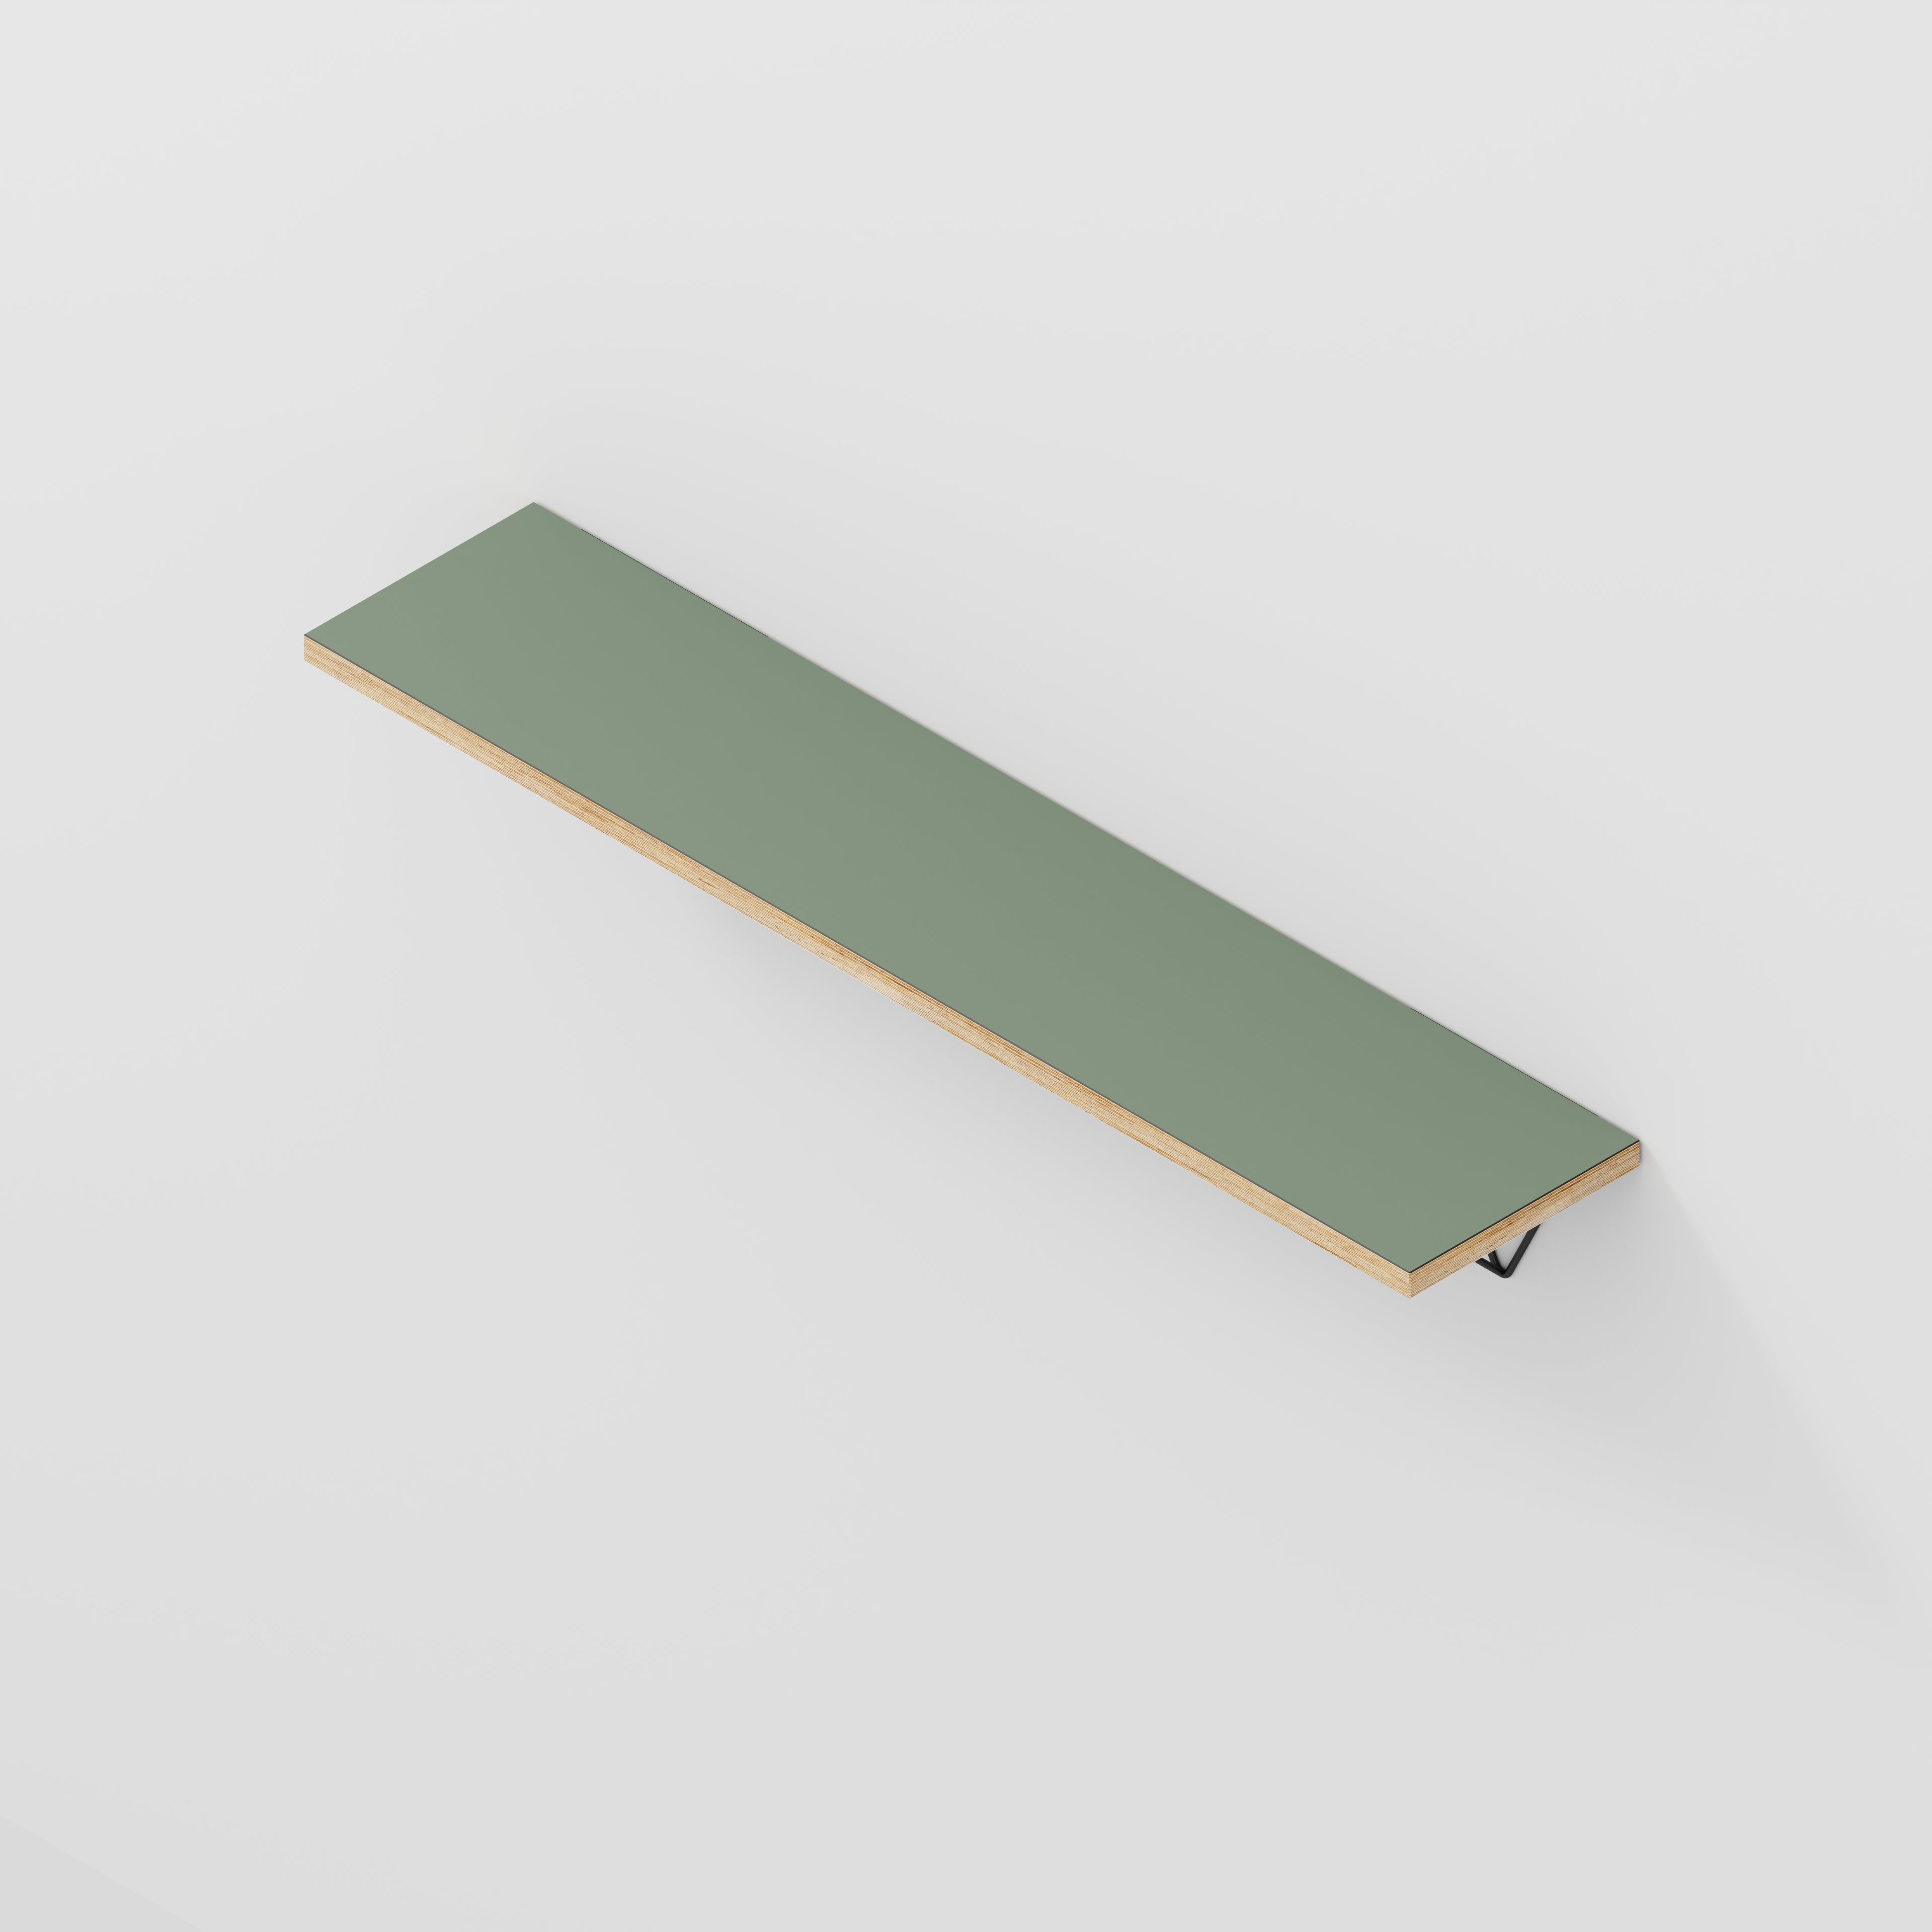 Wall Shelf with Prism Brackets - Formica Green Slate - 1200(w) x 250(d)